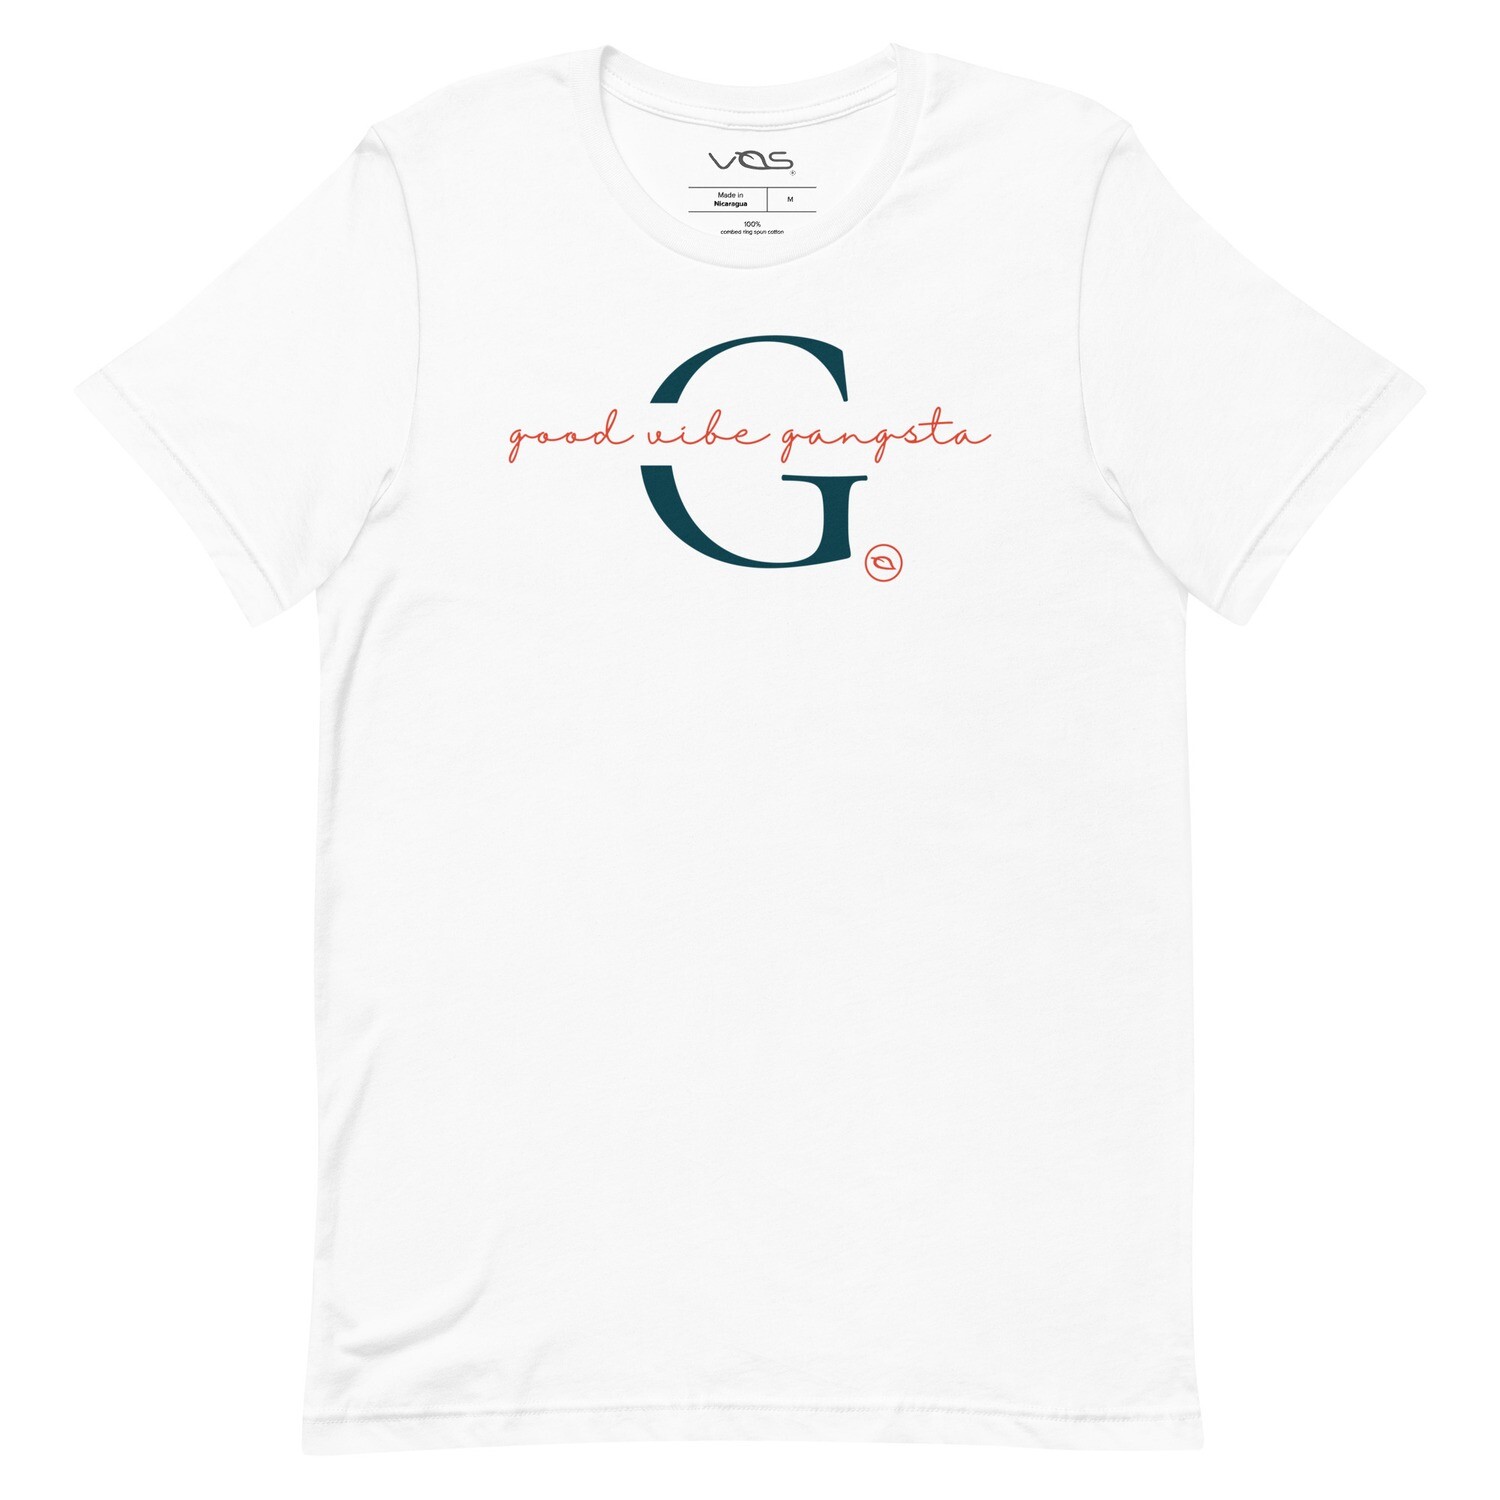 Ordelijk Scepticisme documentaire Good Vibe Gangsta | VOS | Minimalist T-Shirt